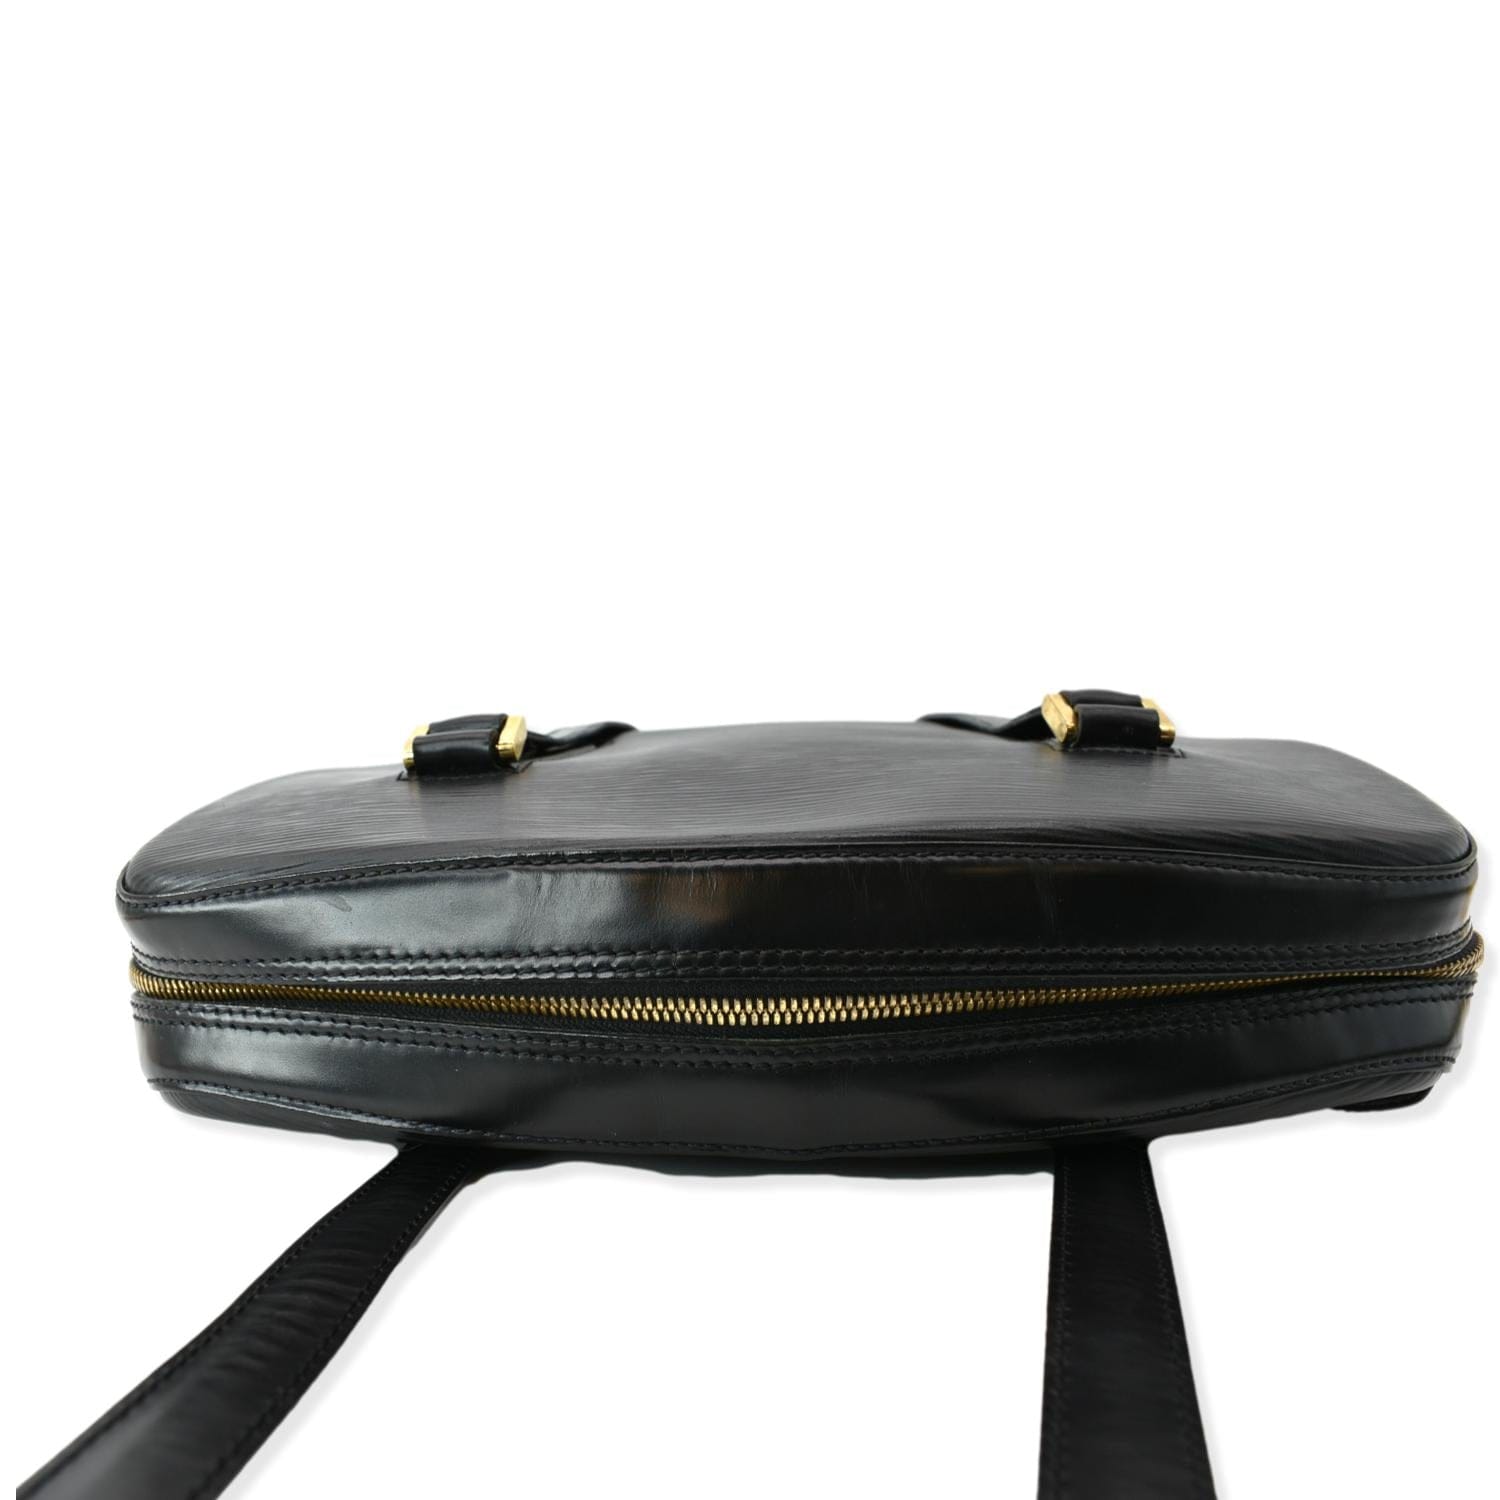 LOUIS VUITTON bag in black épi leather - VALOIS VINTAGE PARIS